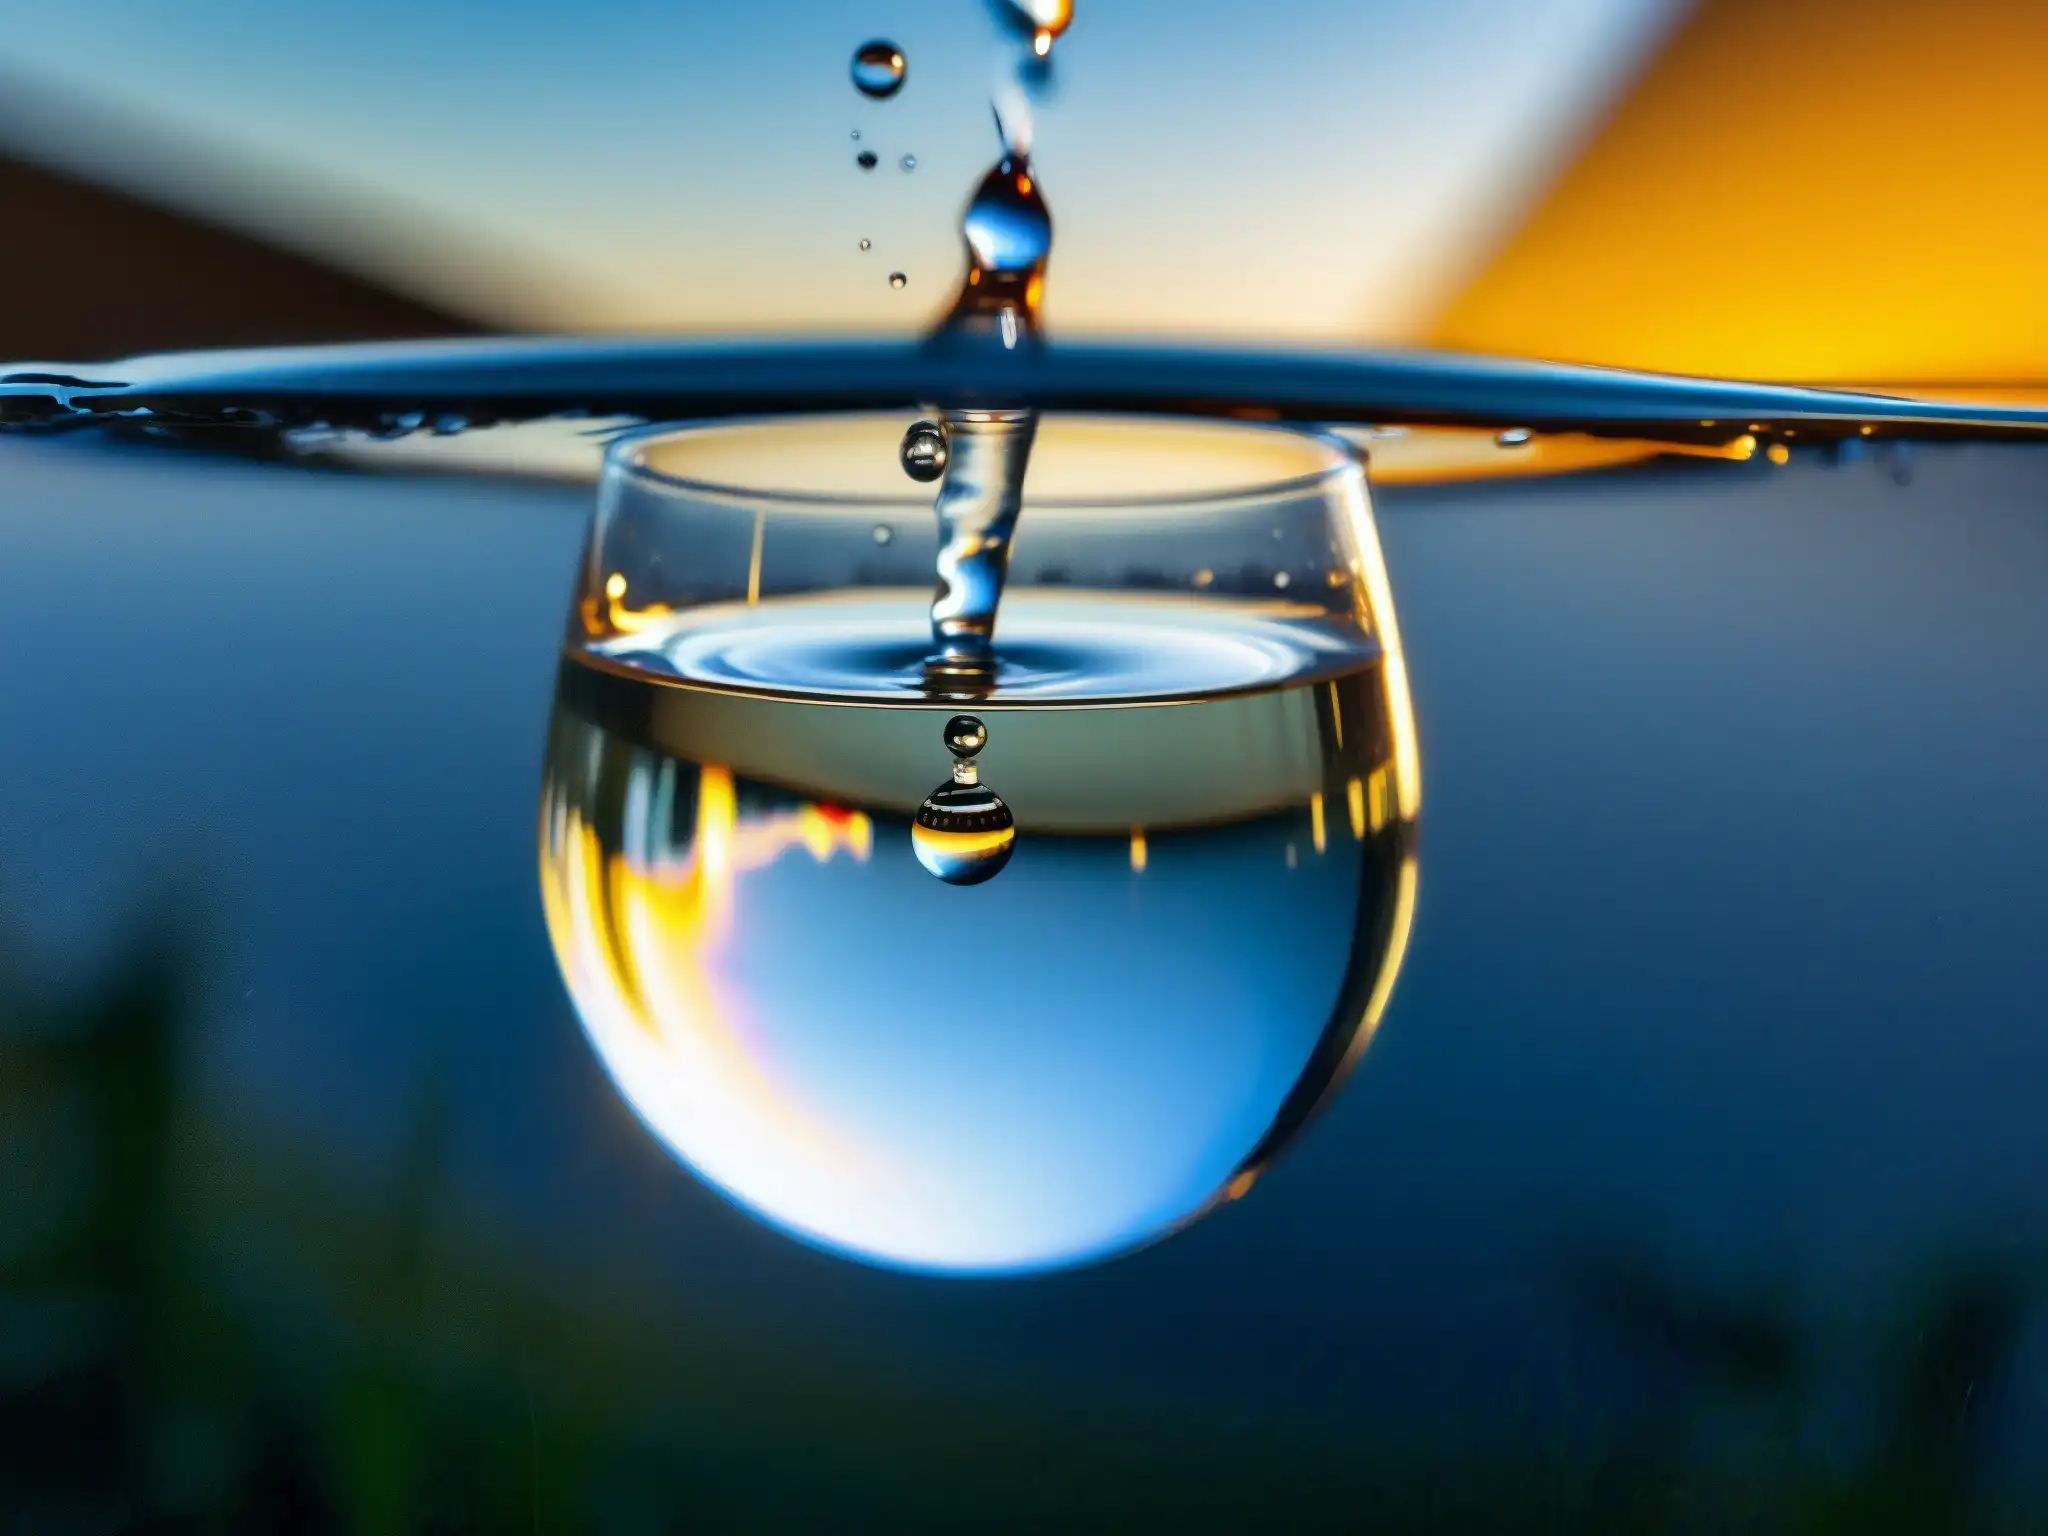 Gotas de agua impactan en vaso, creando ondas y reflejos